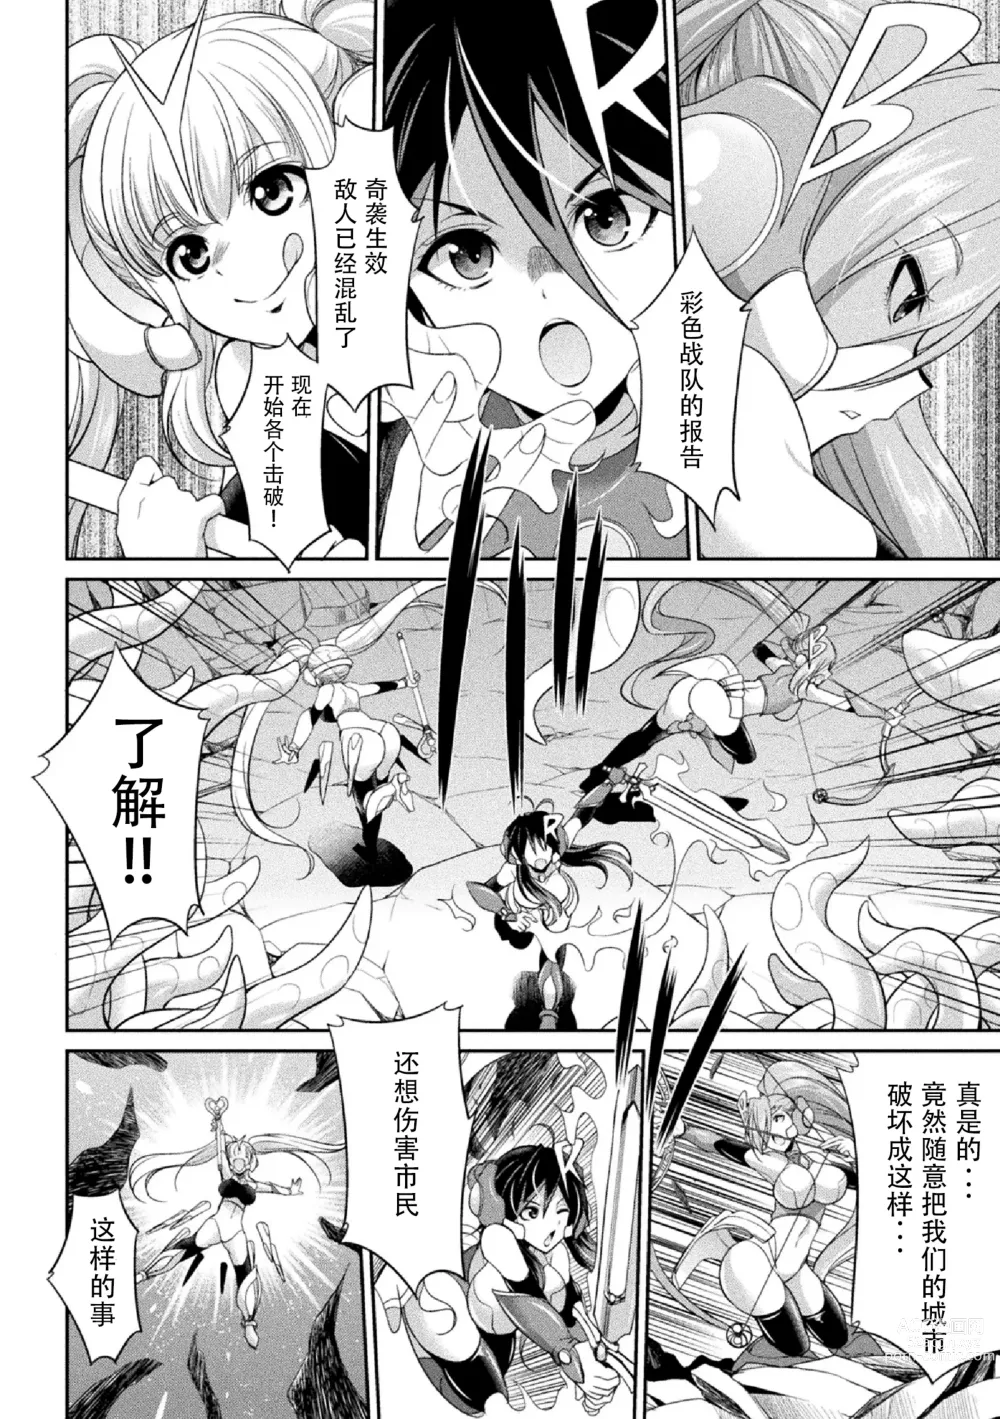 Page 8 of manga Tokumu Sentai Colorful Force Seigi no Heroine vs Shokushu Joou! Futanari Choukyou Daikessen!?